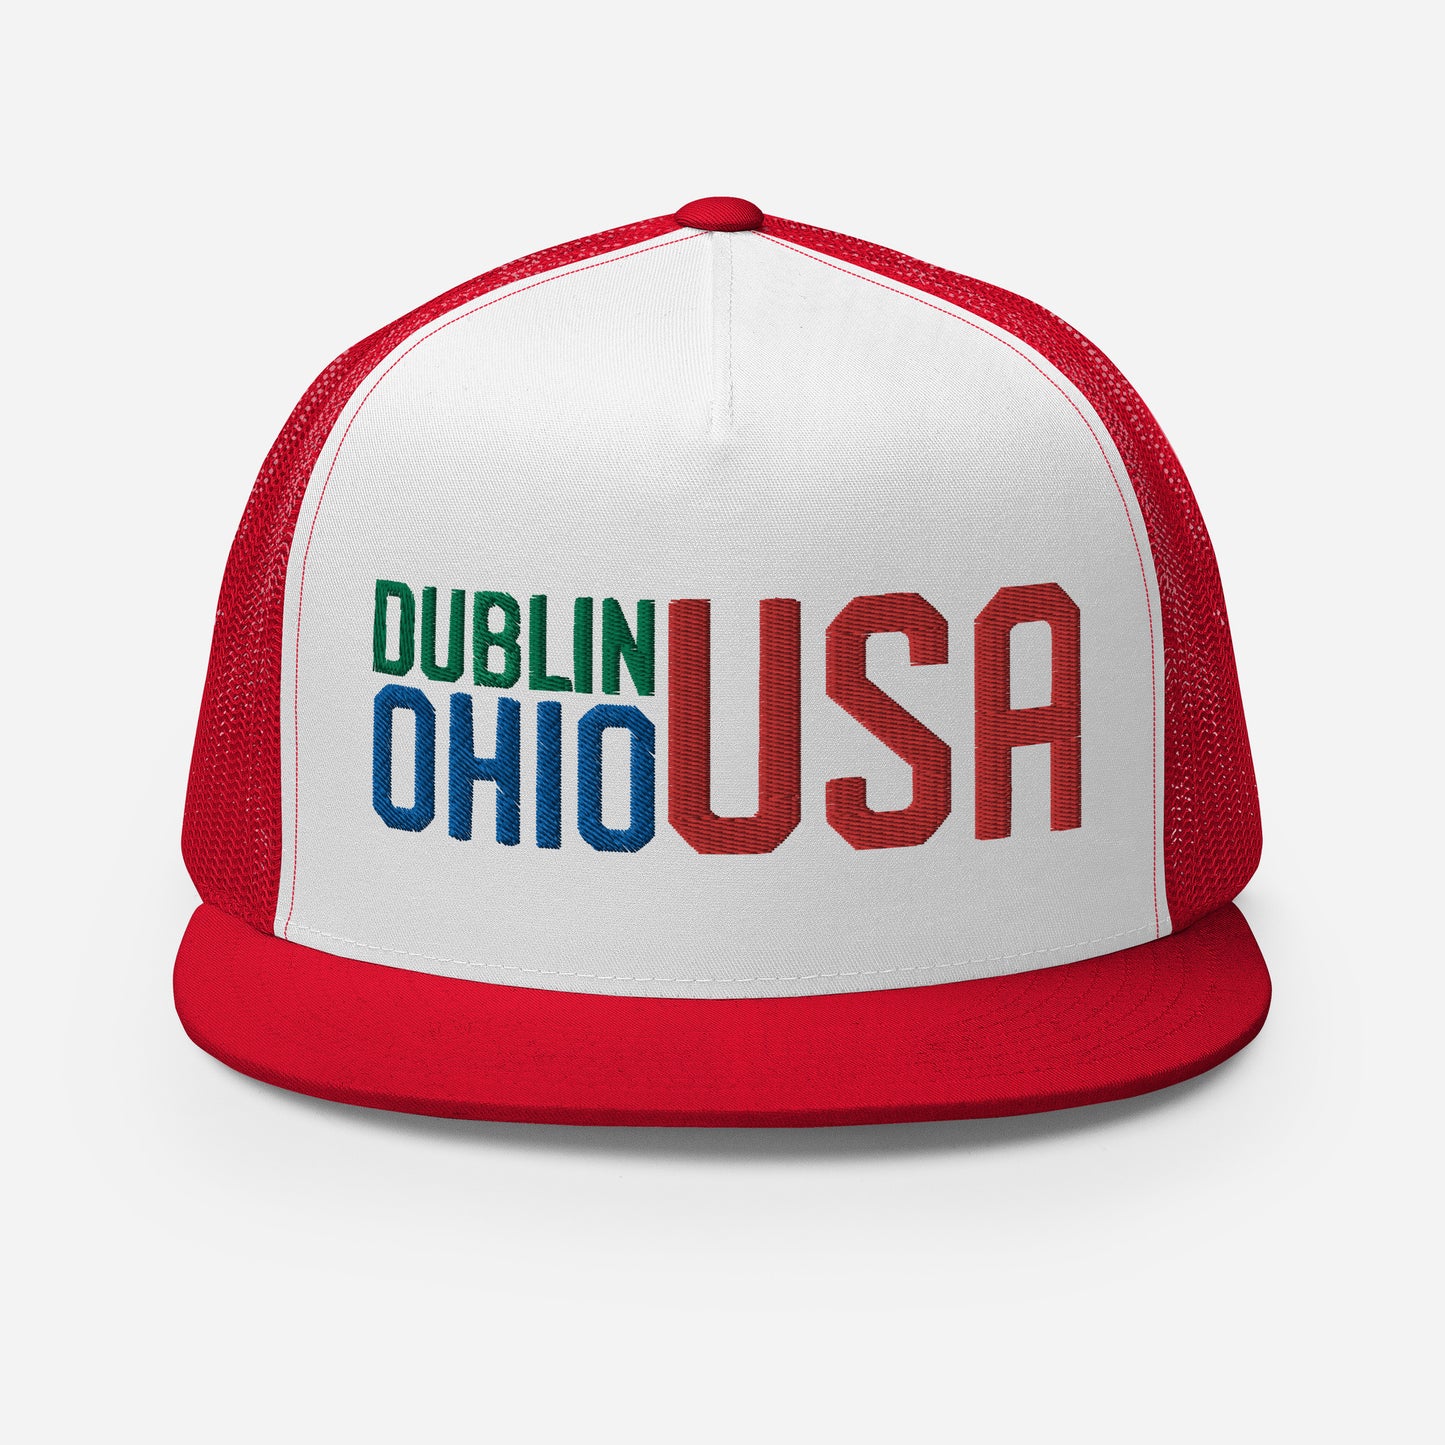 DUBLIN OHIO USA-Trucker Cap